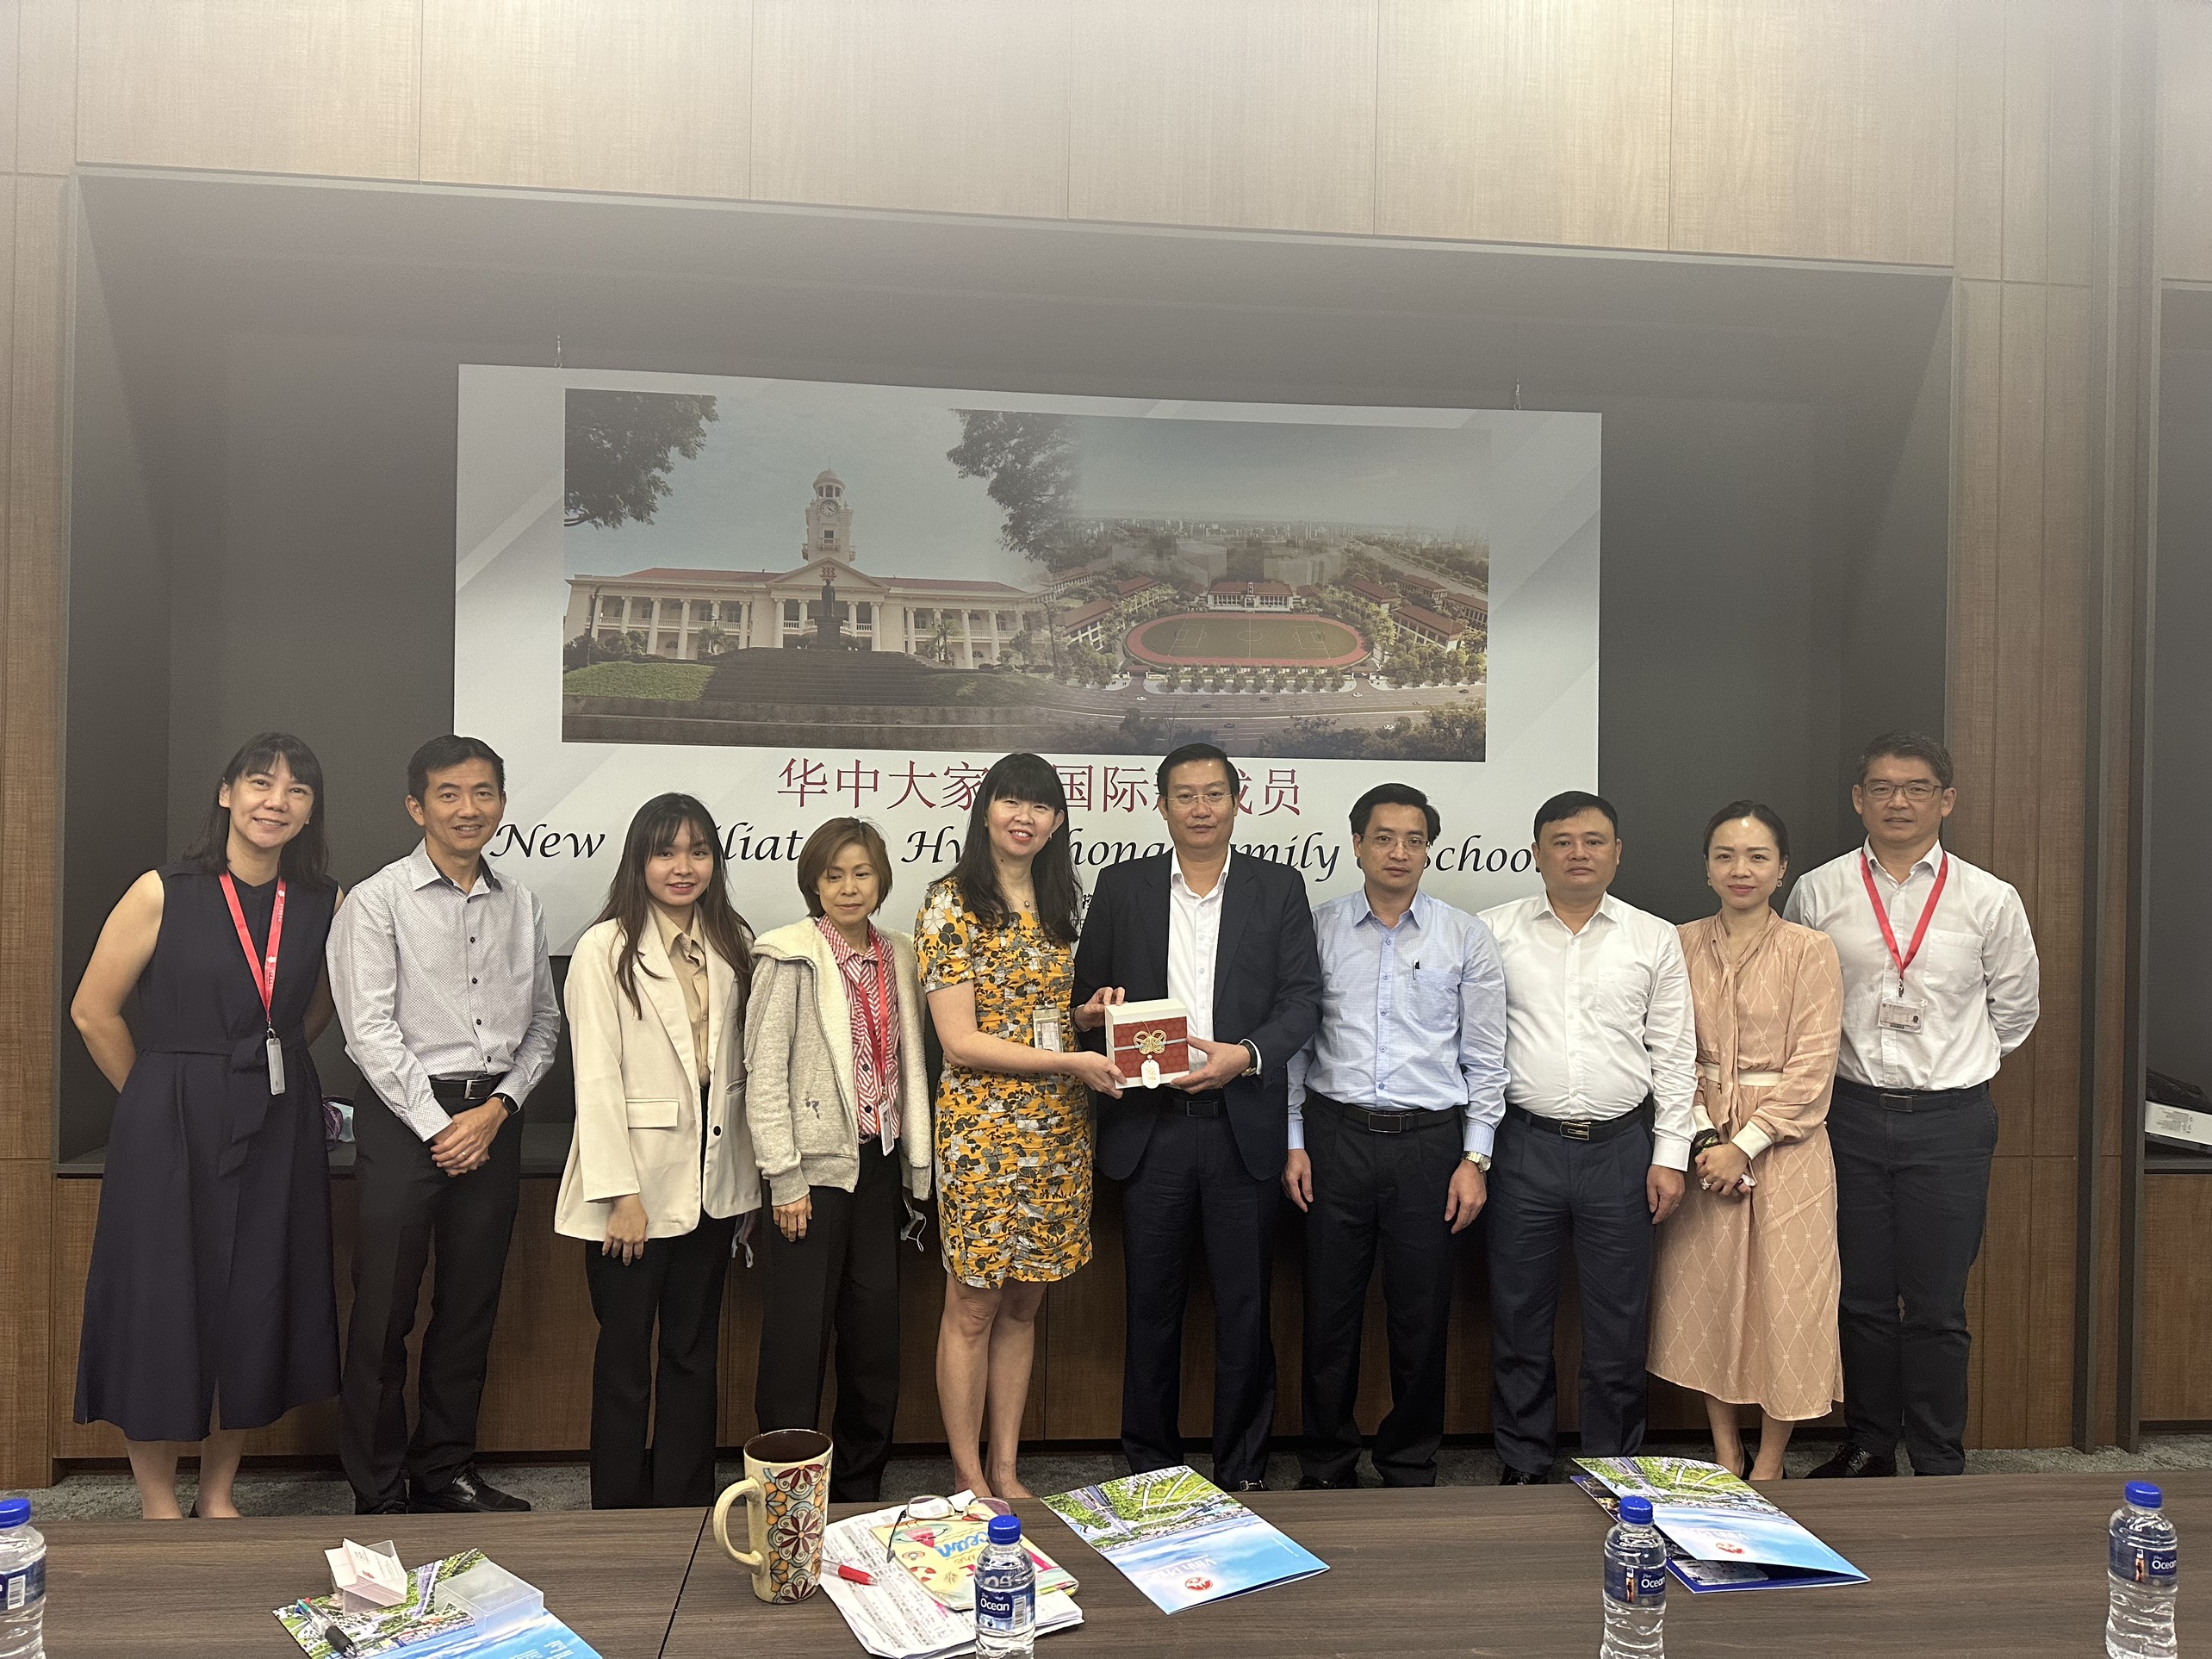 Đoàn công tác xúc tiến đầu tư, thương mại và du lịch tỉnh Vĩnh Phúc thăm và làm việc với Trường quốc tế Hwa Chong tại Singapore